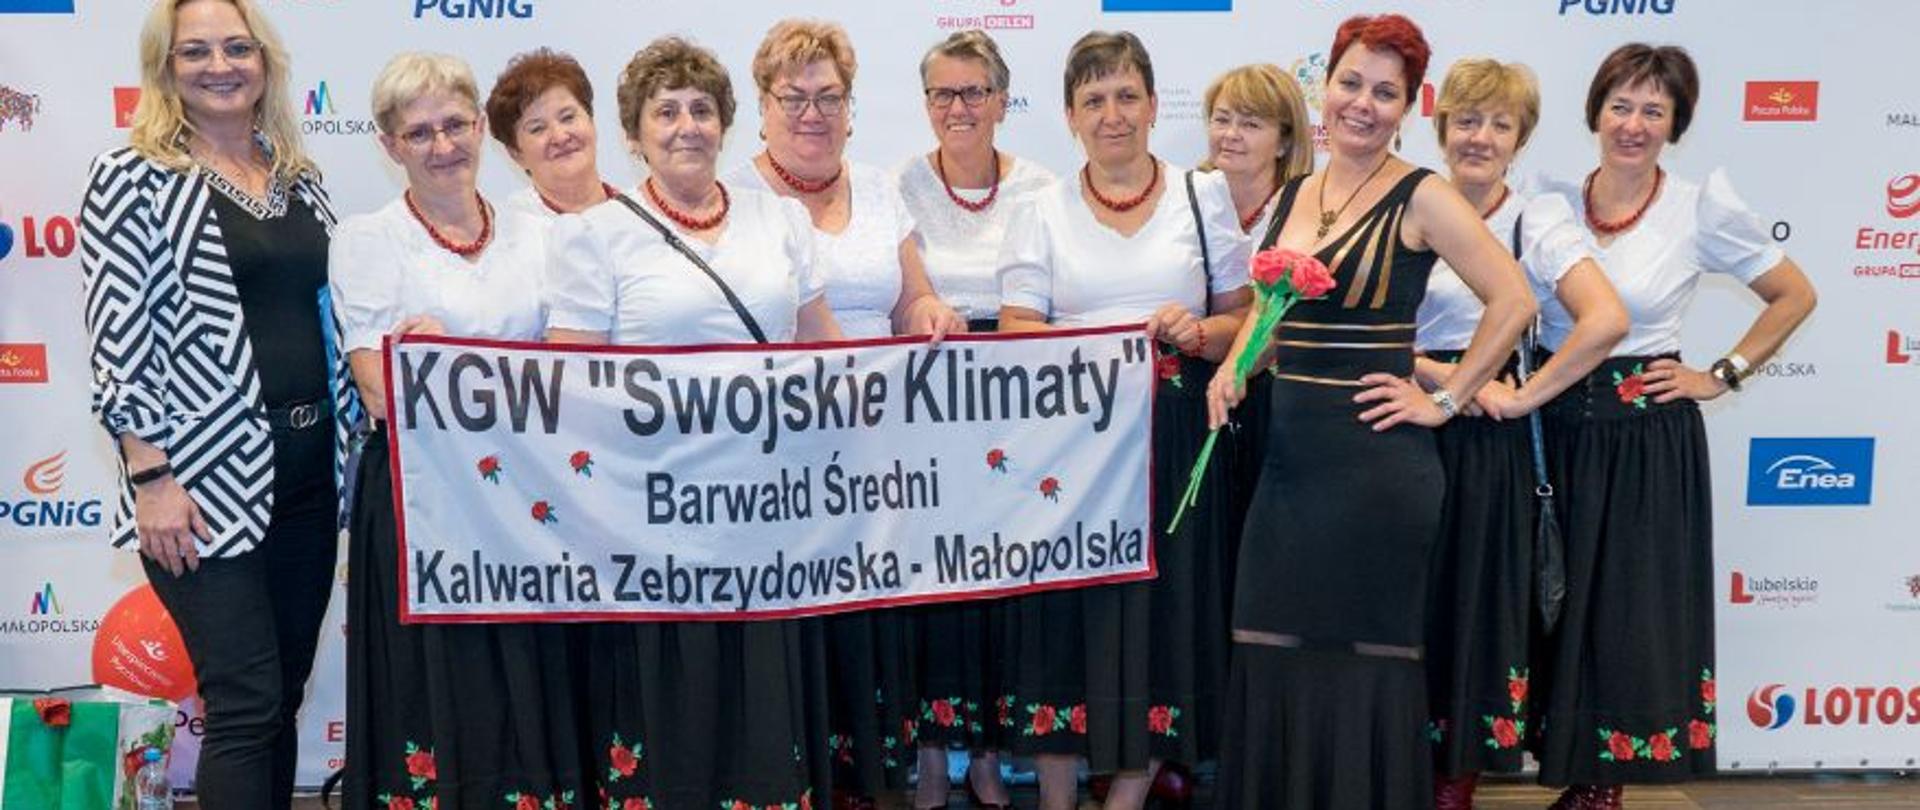 Zdjęcie grupowe KGW „Swojskie Klimaty”, na zdjęciu przedstawicielki koła z banerem o treści KGW "Swojskie Klimaty" Barwałd Średni - Kalwaria Zebrzydowska - Małopolska. 